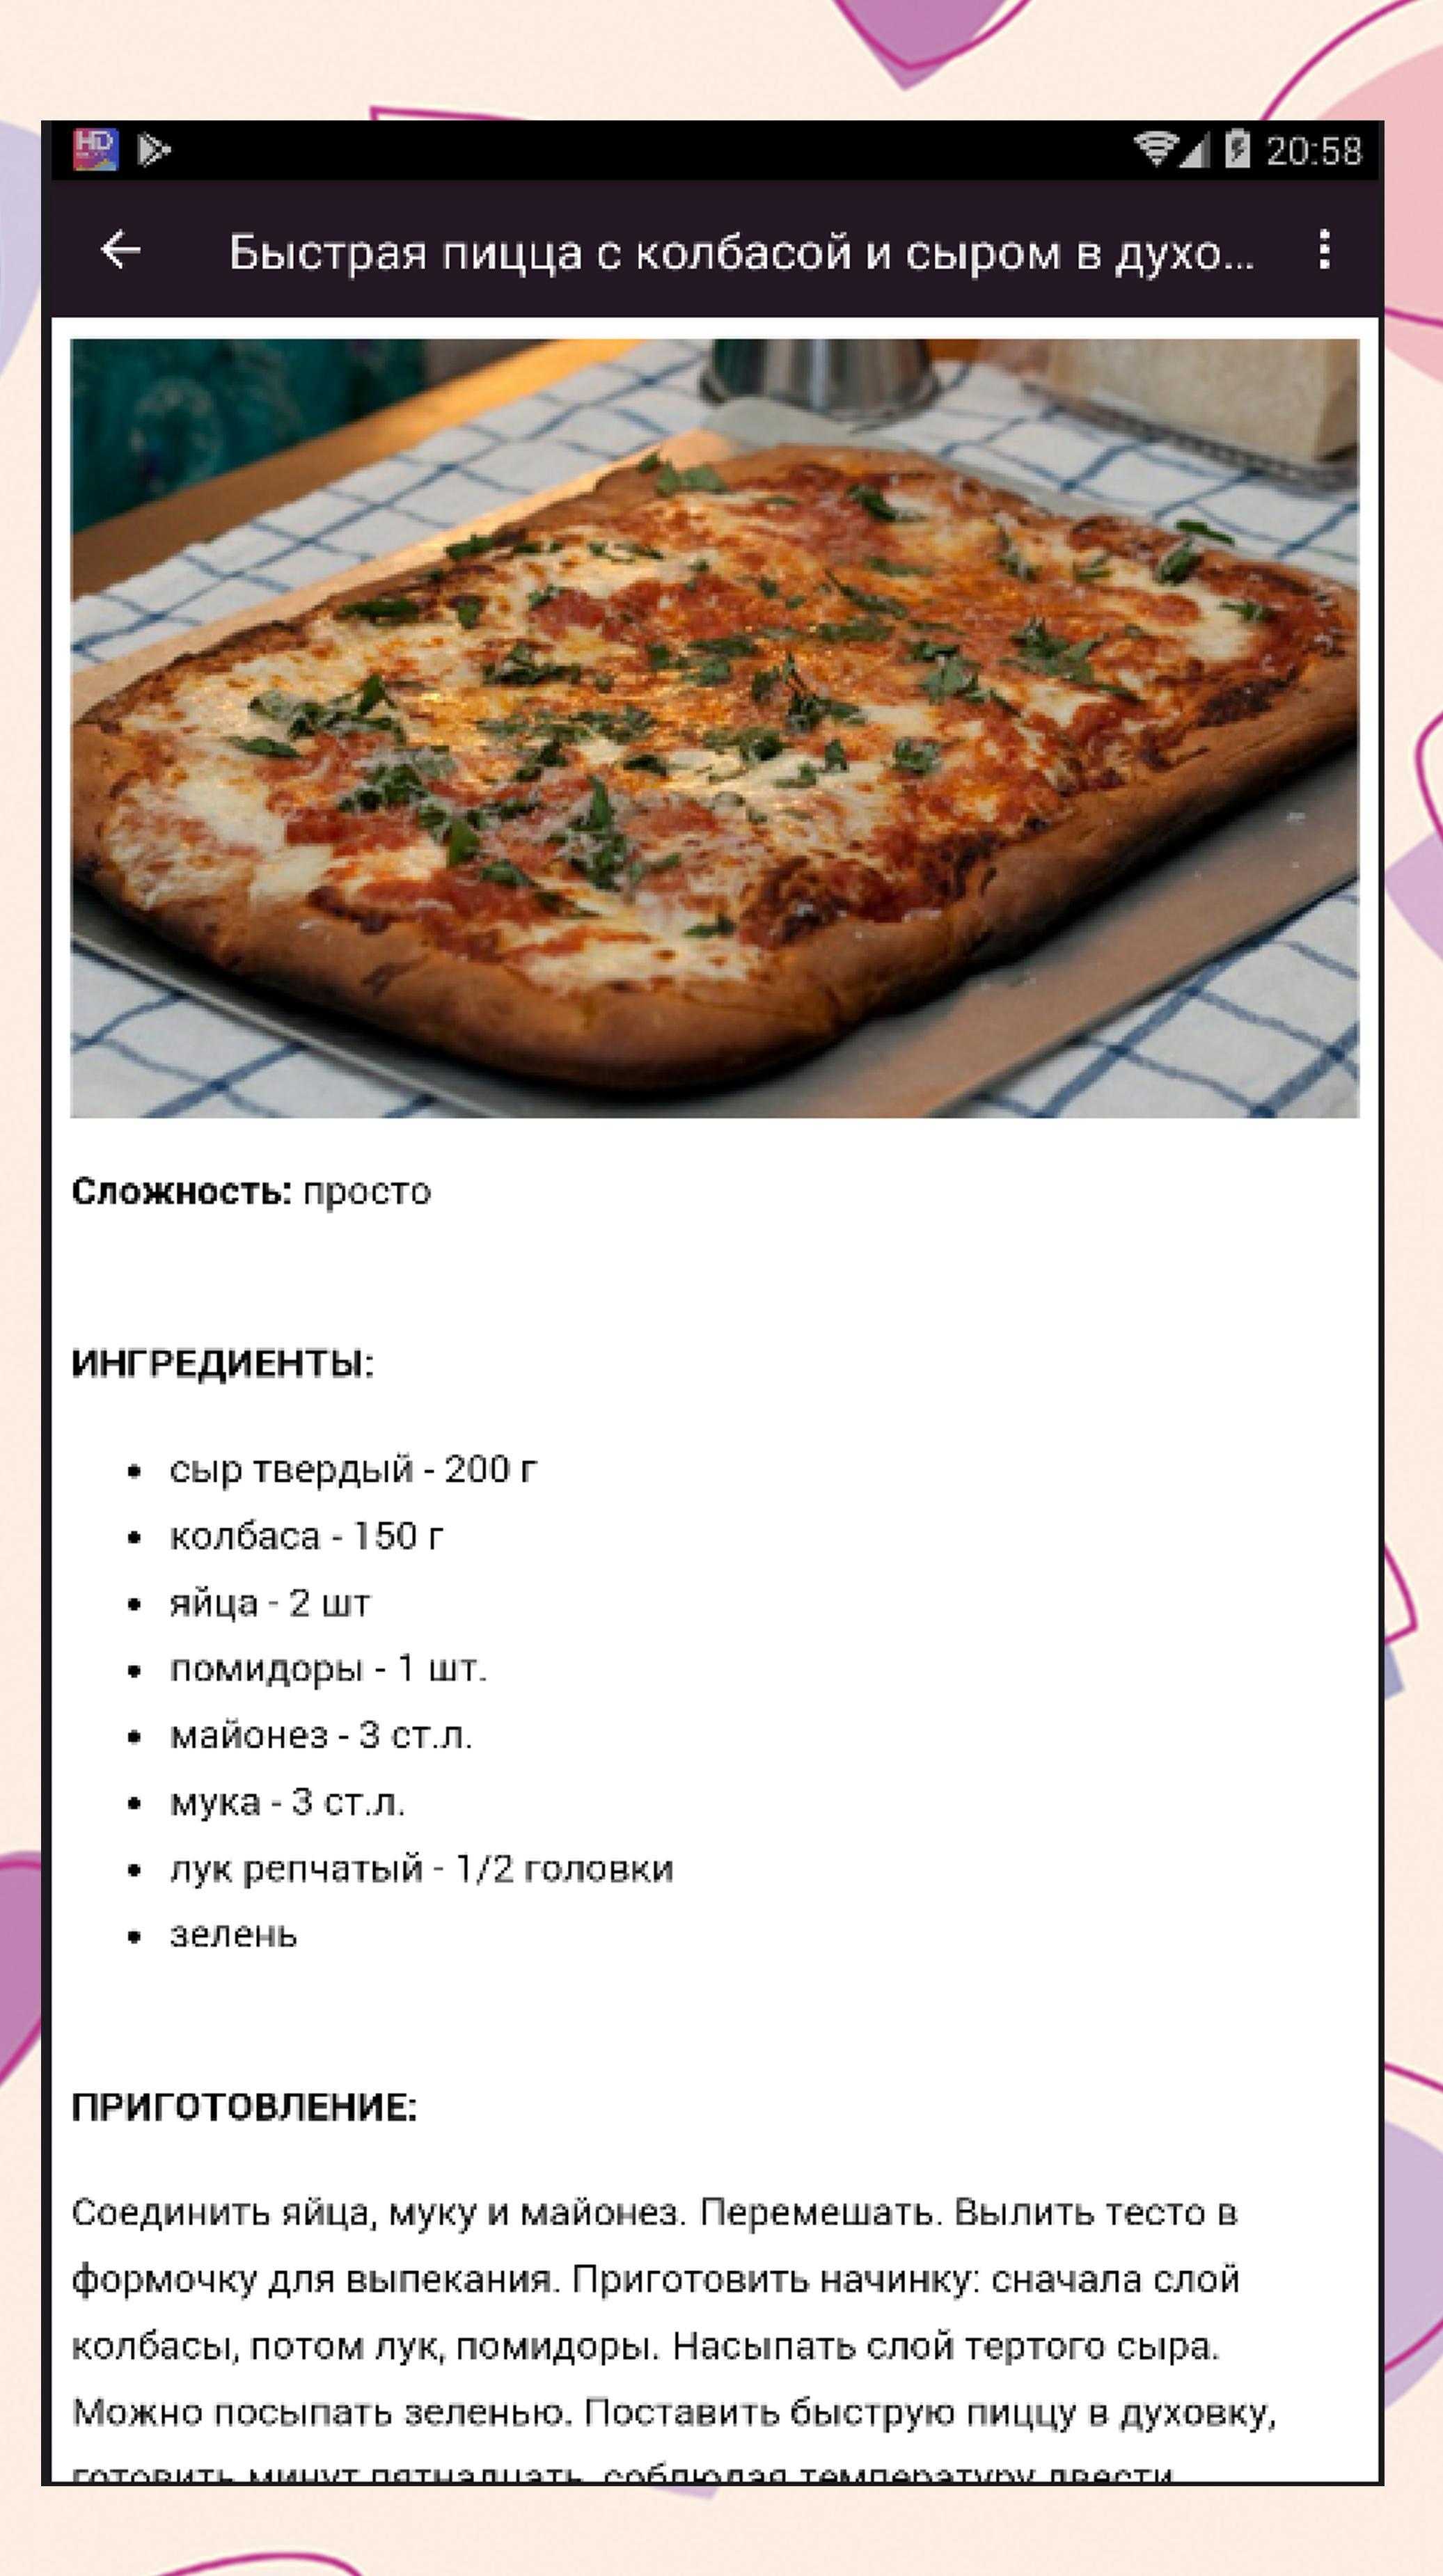 хороший рецепт дрожжевого теста на пиццу фото 11